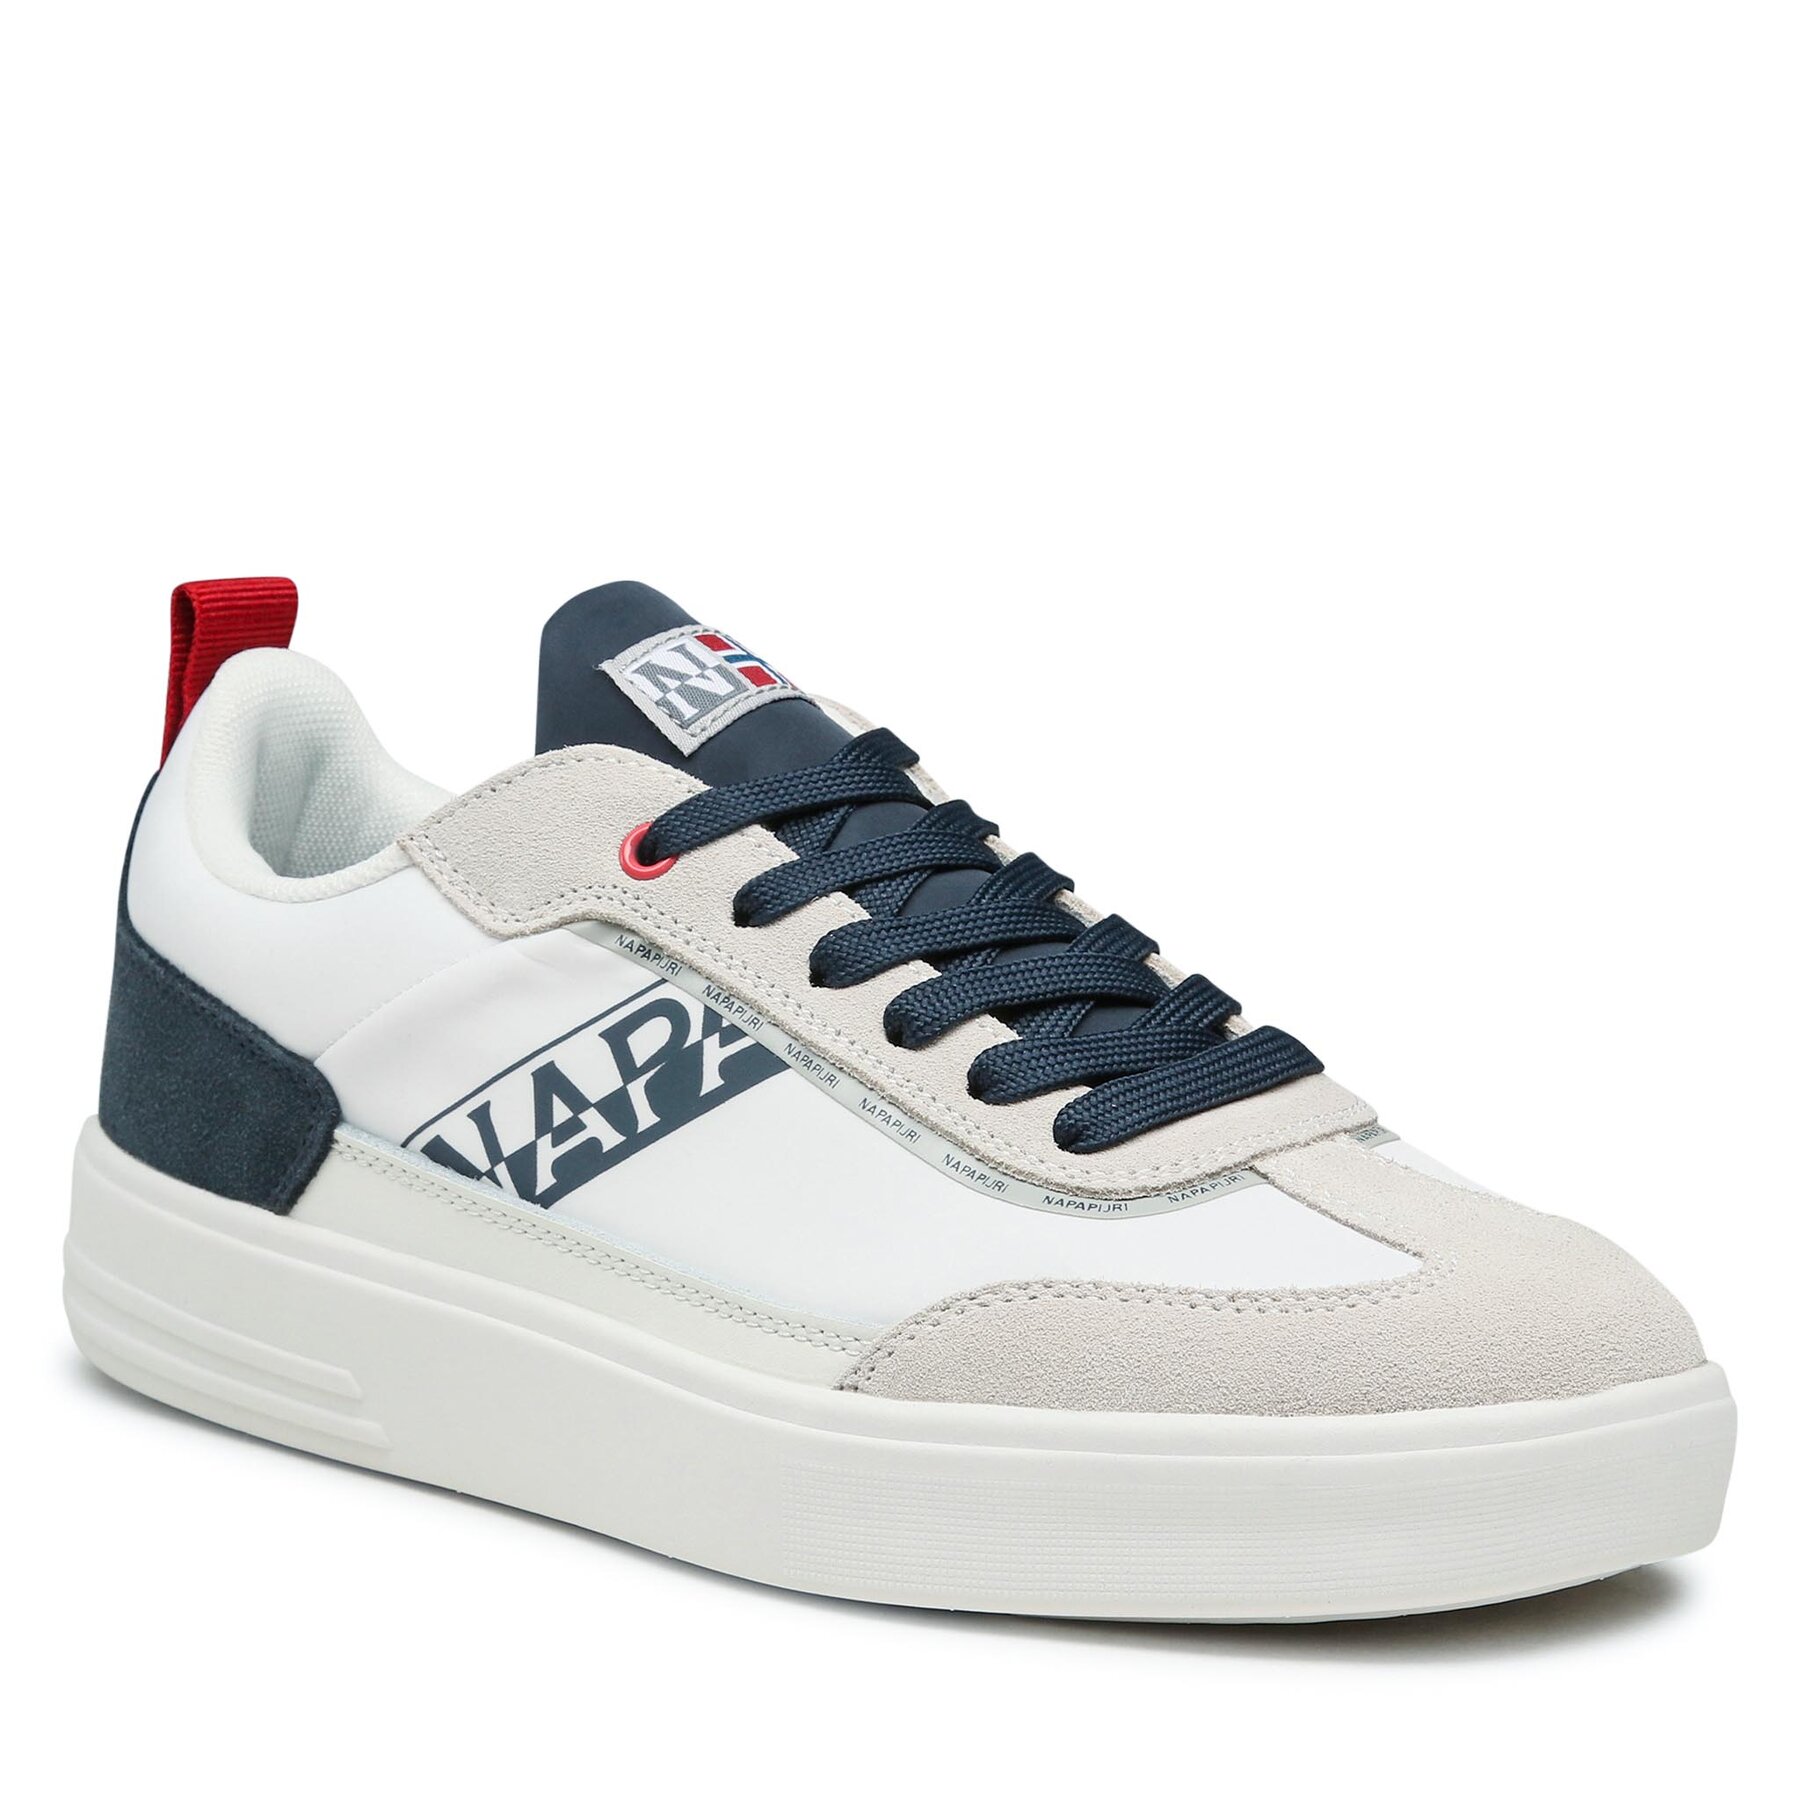 Sneakers Napapijri NP0A4HKS White/Navy